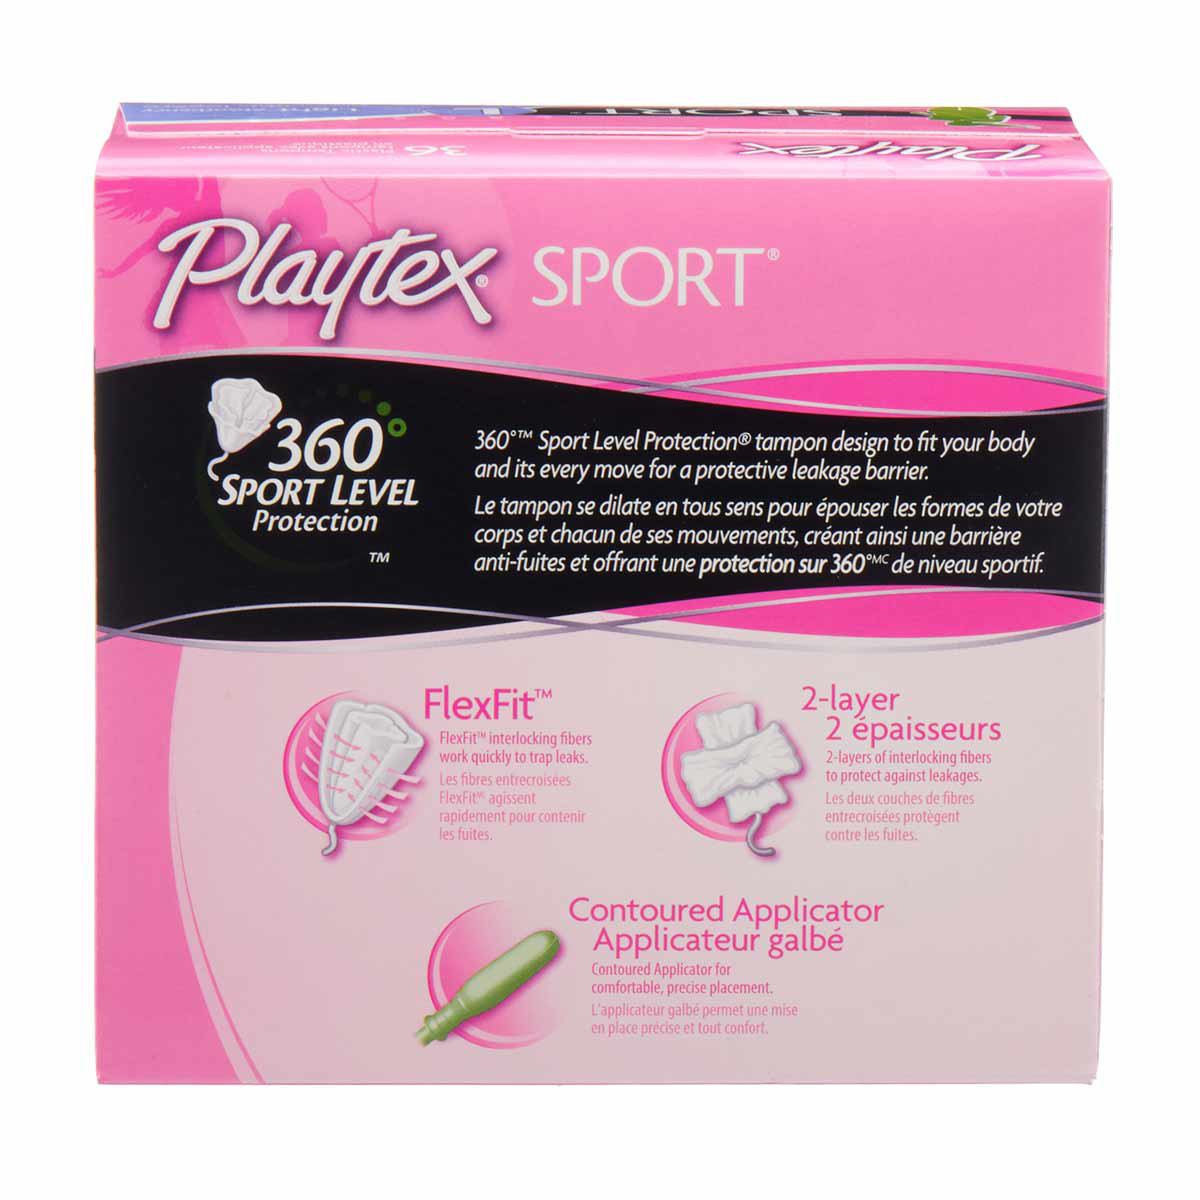 Playtex Sport Tampons reviews in Feminine Hygiene - Tampons